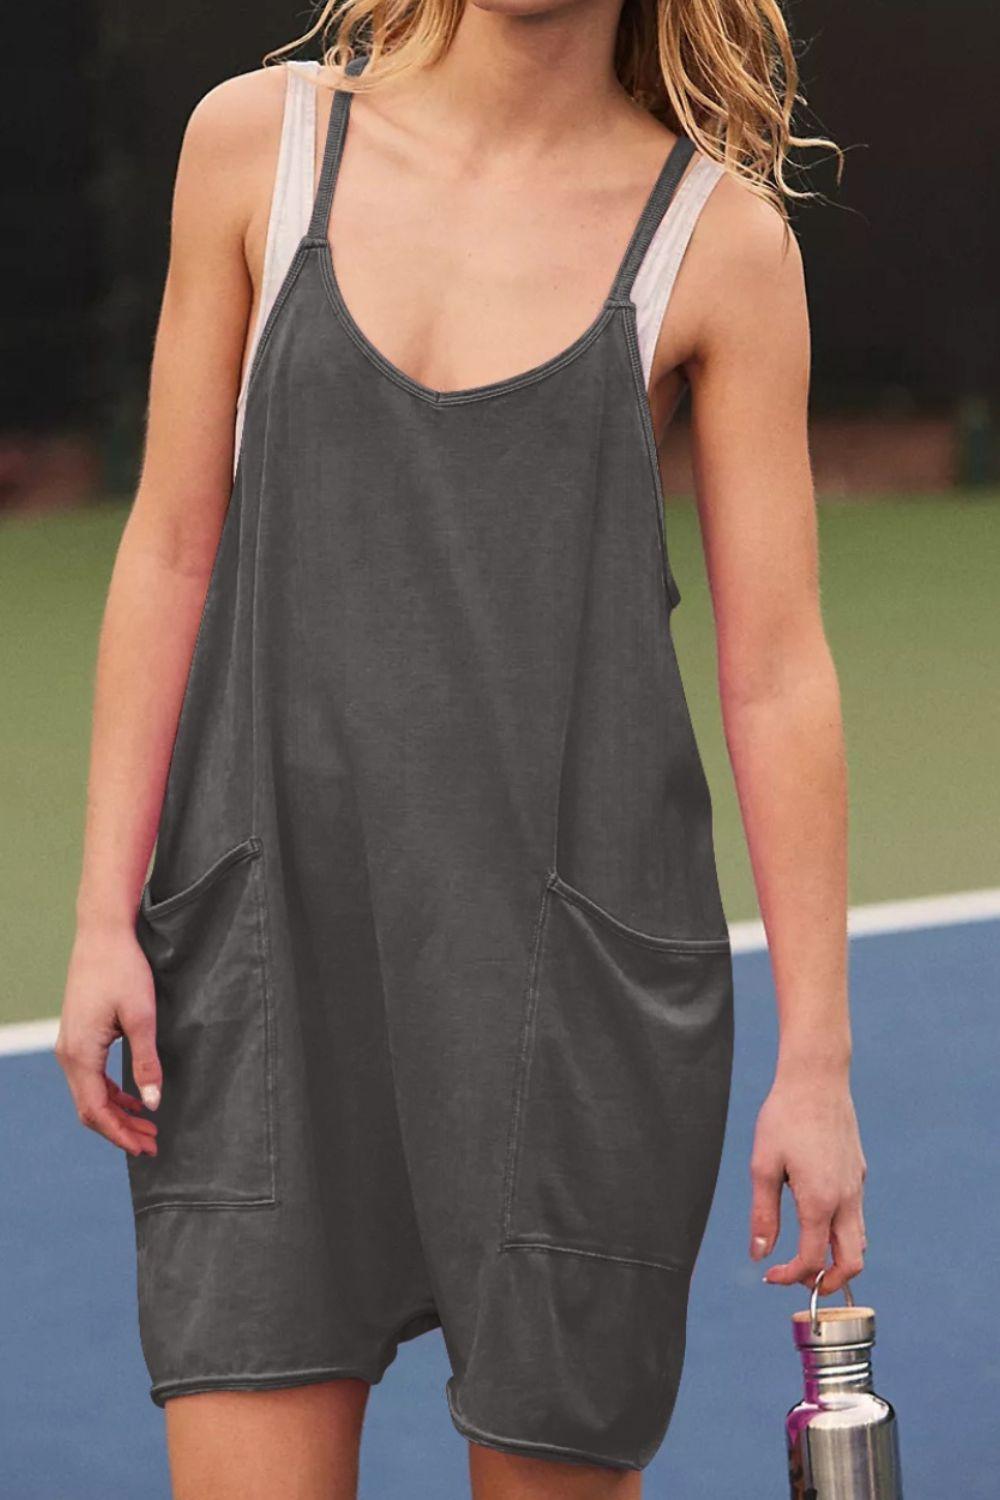 a woman holding a tennis racquet on a tennis court